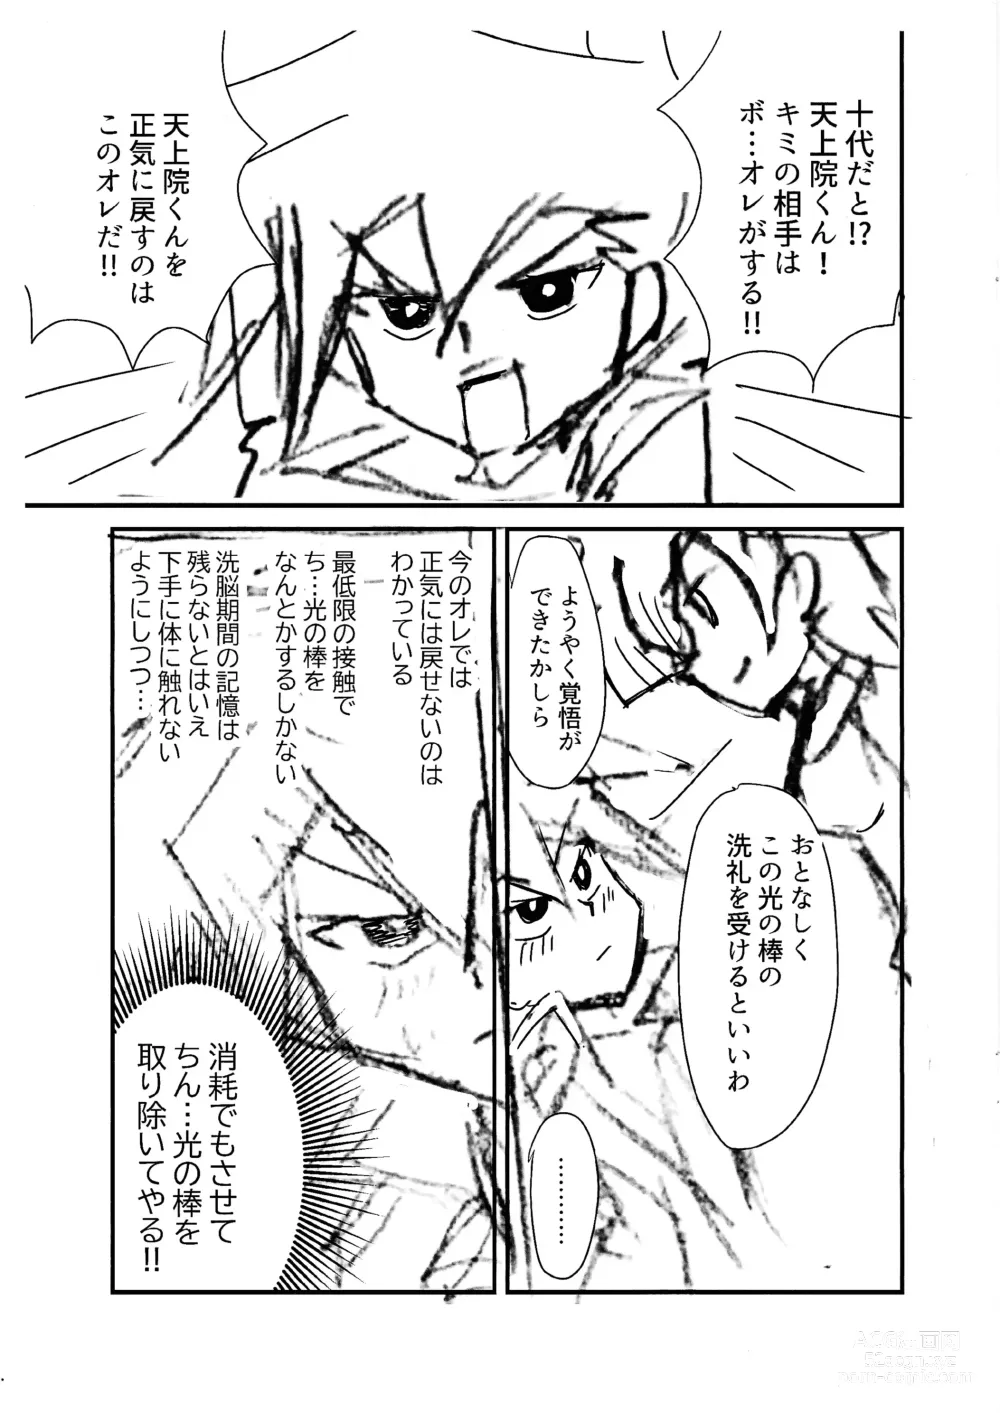 Page 4 of doujinshi Kuro no ore ga mata shiroku some rareyou to shite iru yodaga!?